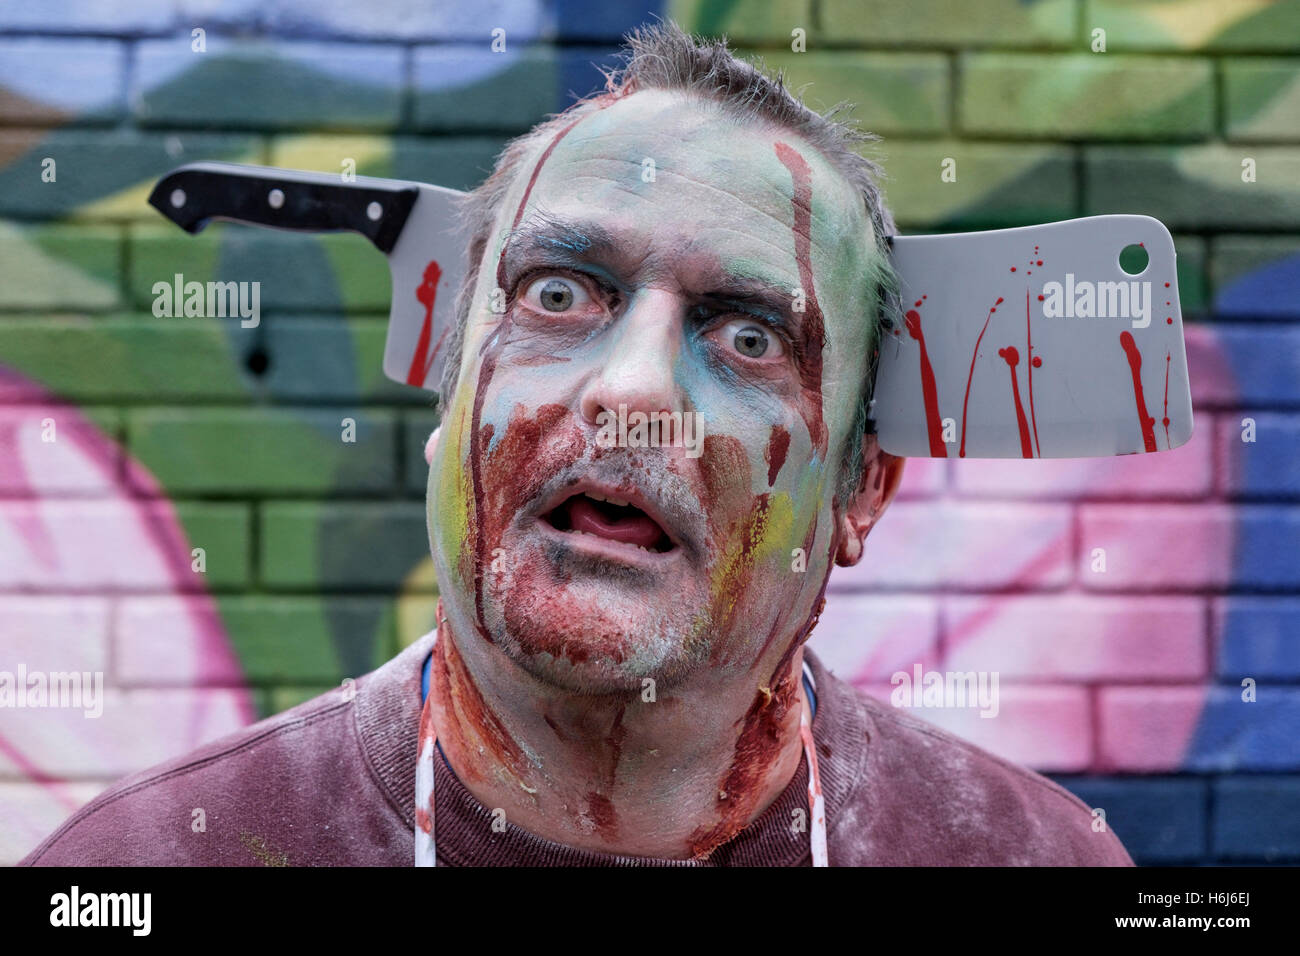 Bristol, Regno Unito. 29 ott 2016. Un uomo vestito come uno zombie in posa per una fotografia come egli partecipa a uno Zombie a piedi in Bristol. Credito: lynchpics/Alamy Live News Foto Stock